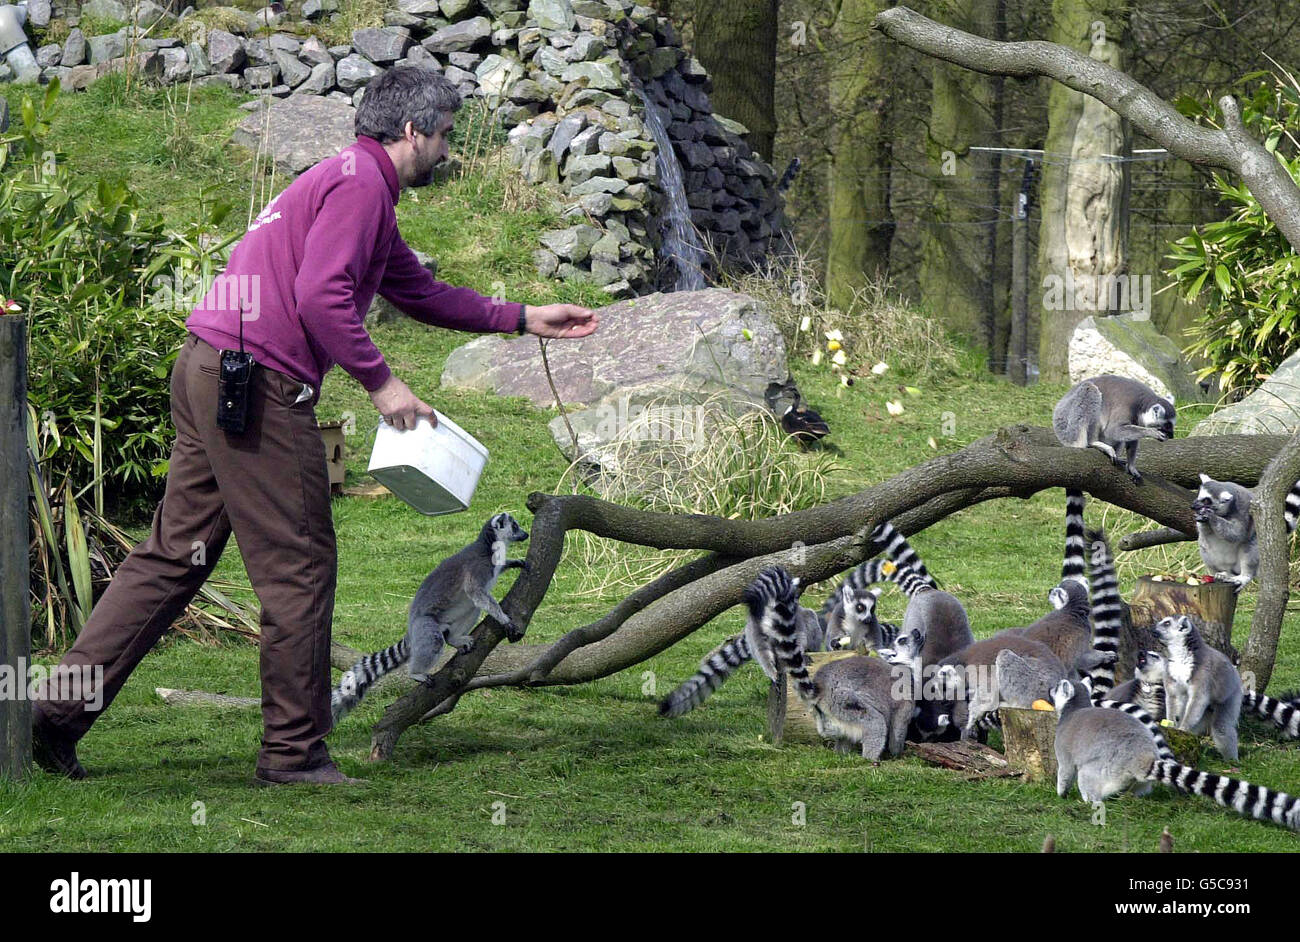 Un custode nutre i lemuri al Whipsnade Wild Animal Park nel Bedfordshire, 19 aprile 2001, il primo giorno della sua riapertura dopo la chiusura Iin fine febbraio come misura precauzionale durante lo scoppio dell'afta epizootica. *il Parco è stato ora aperto ai pedoni come i gestori dicono che non vi è stata alcuna nuova epidemia nelle vicinanze per un periodo prolungato. Foto Stock